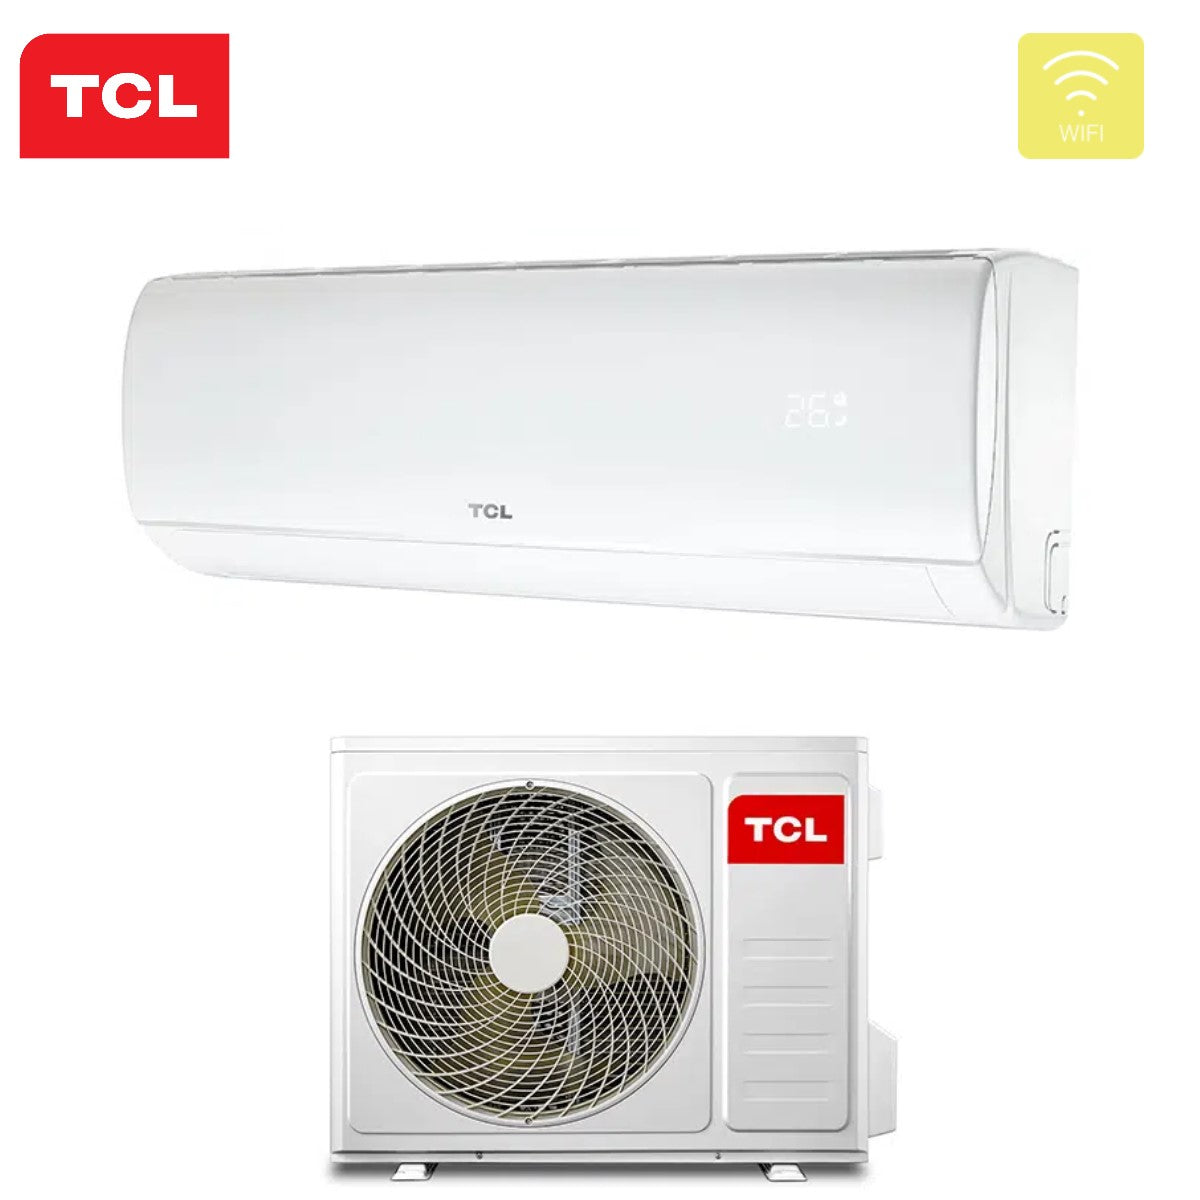 immagine-3-tcl-climatizzatore-condizionatore-tcl-inverter-serie-elite-f1-18000-btu-s18f1s0t-r-32-wi-fi-integrato-classe-aa